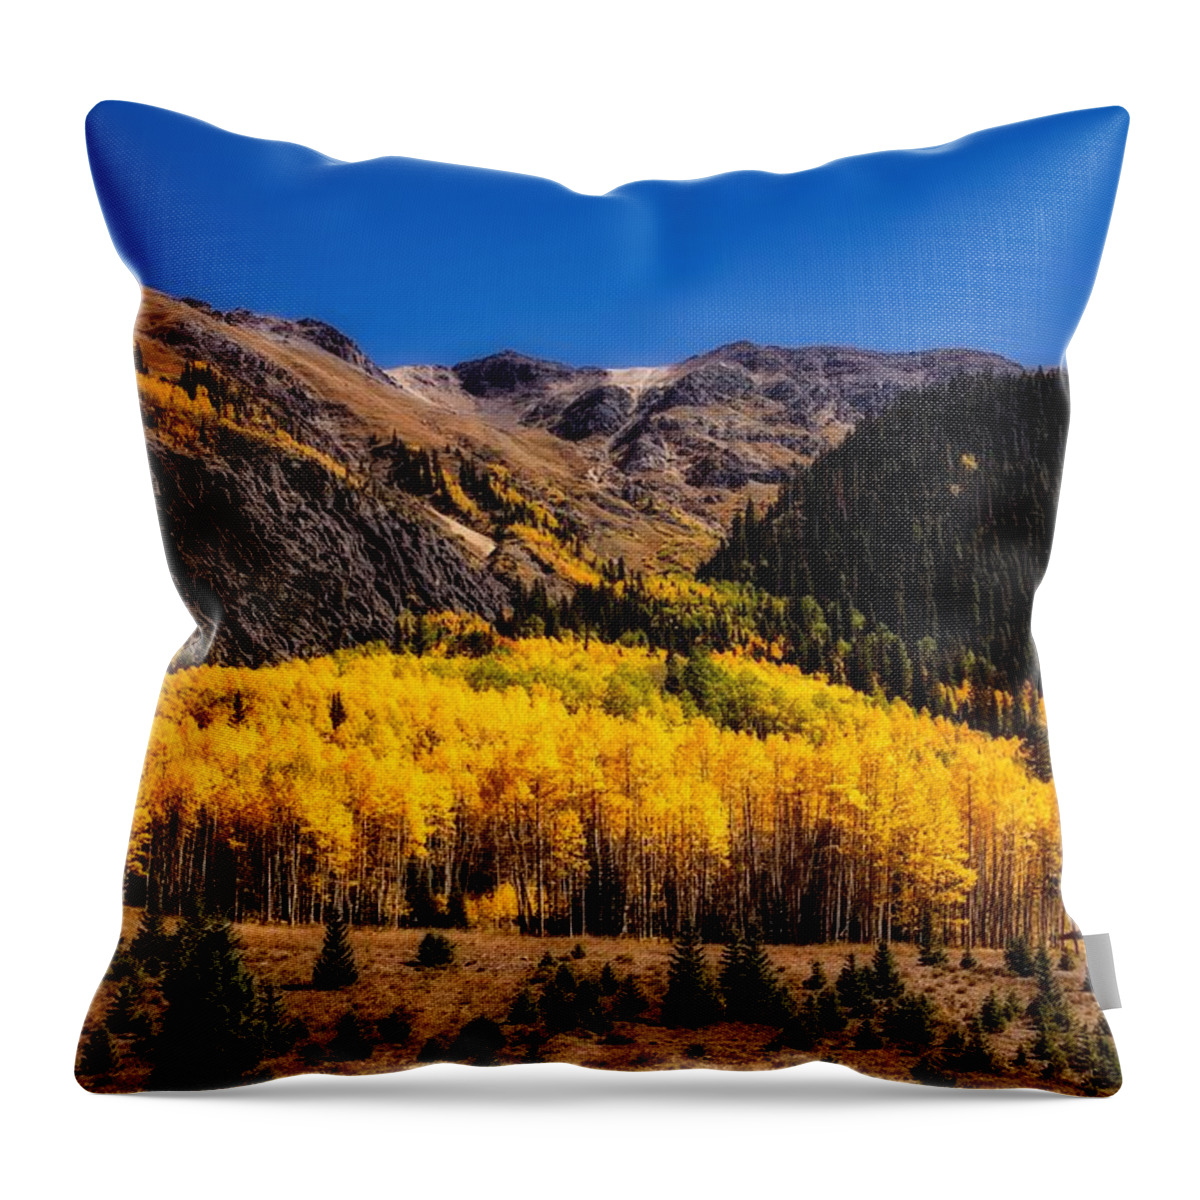 Colorado Throw Pillow featuring the photograph Autumn In Colorado #2 by Mountain Dreams